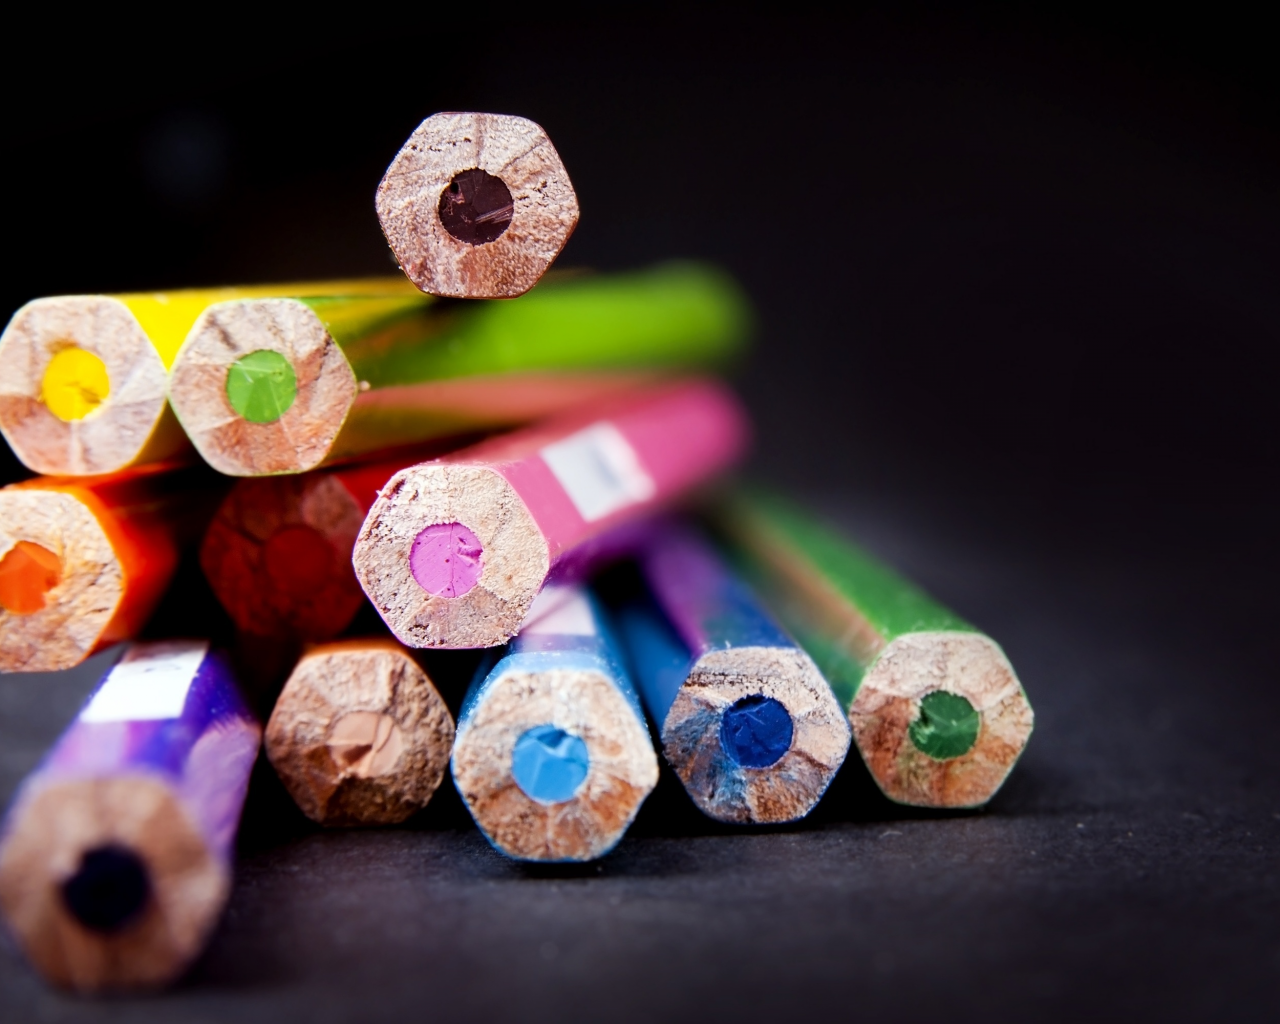 макро, фон, разное, цветные карандаши, размытие, обои